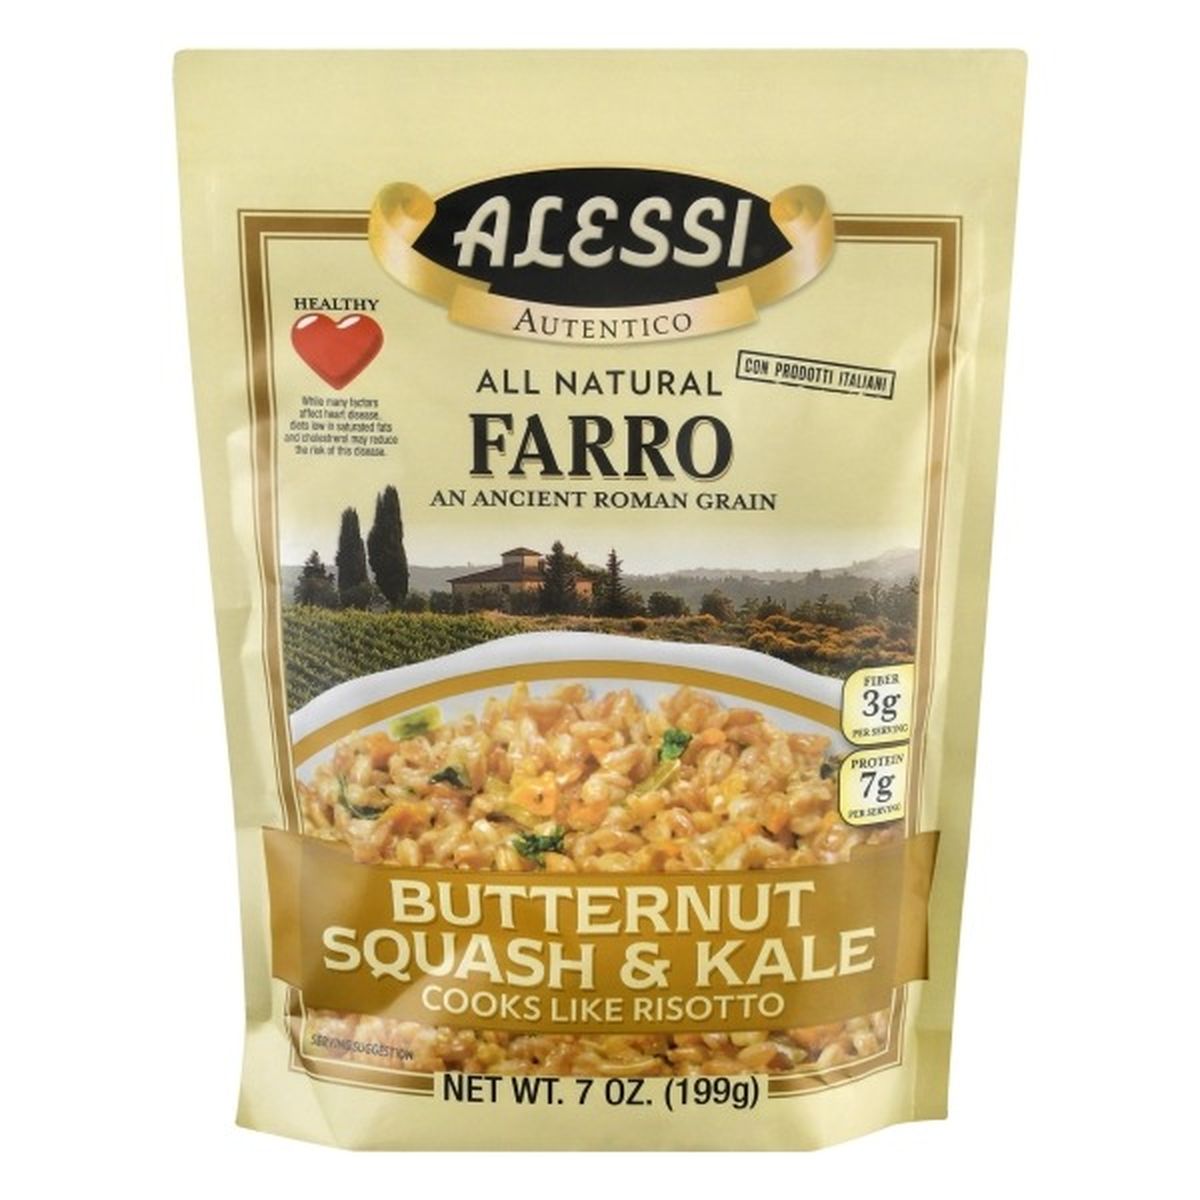 Calories in Alessi Farro, Butternut Squash & Kale